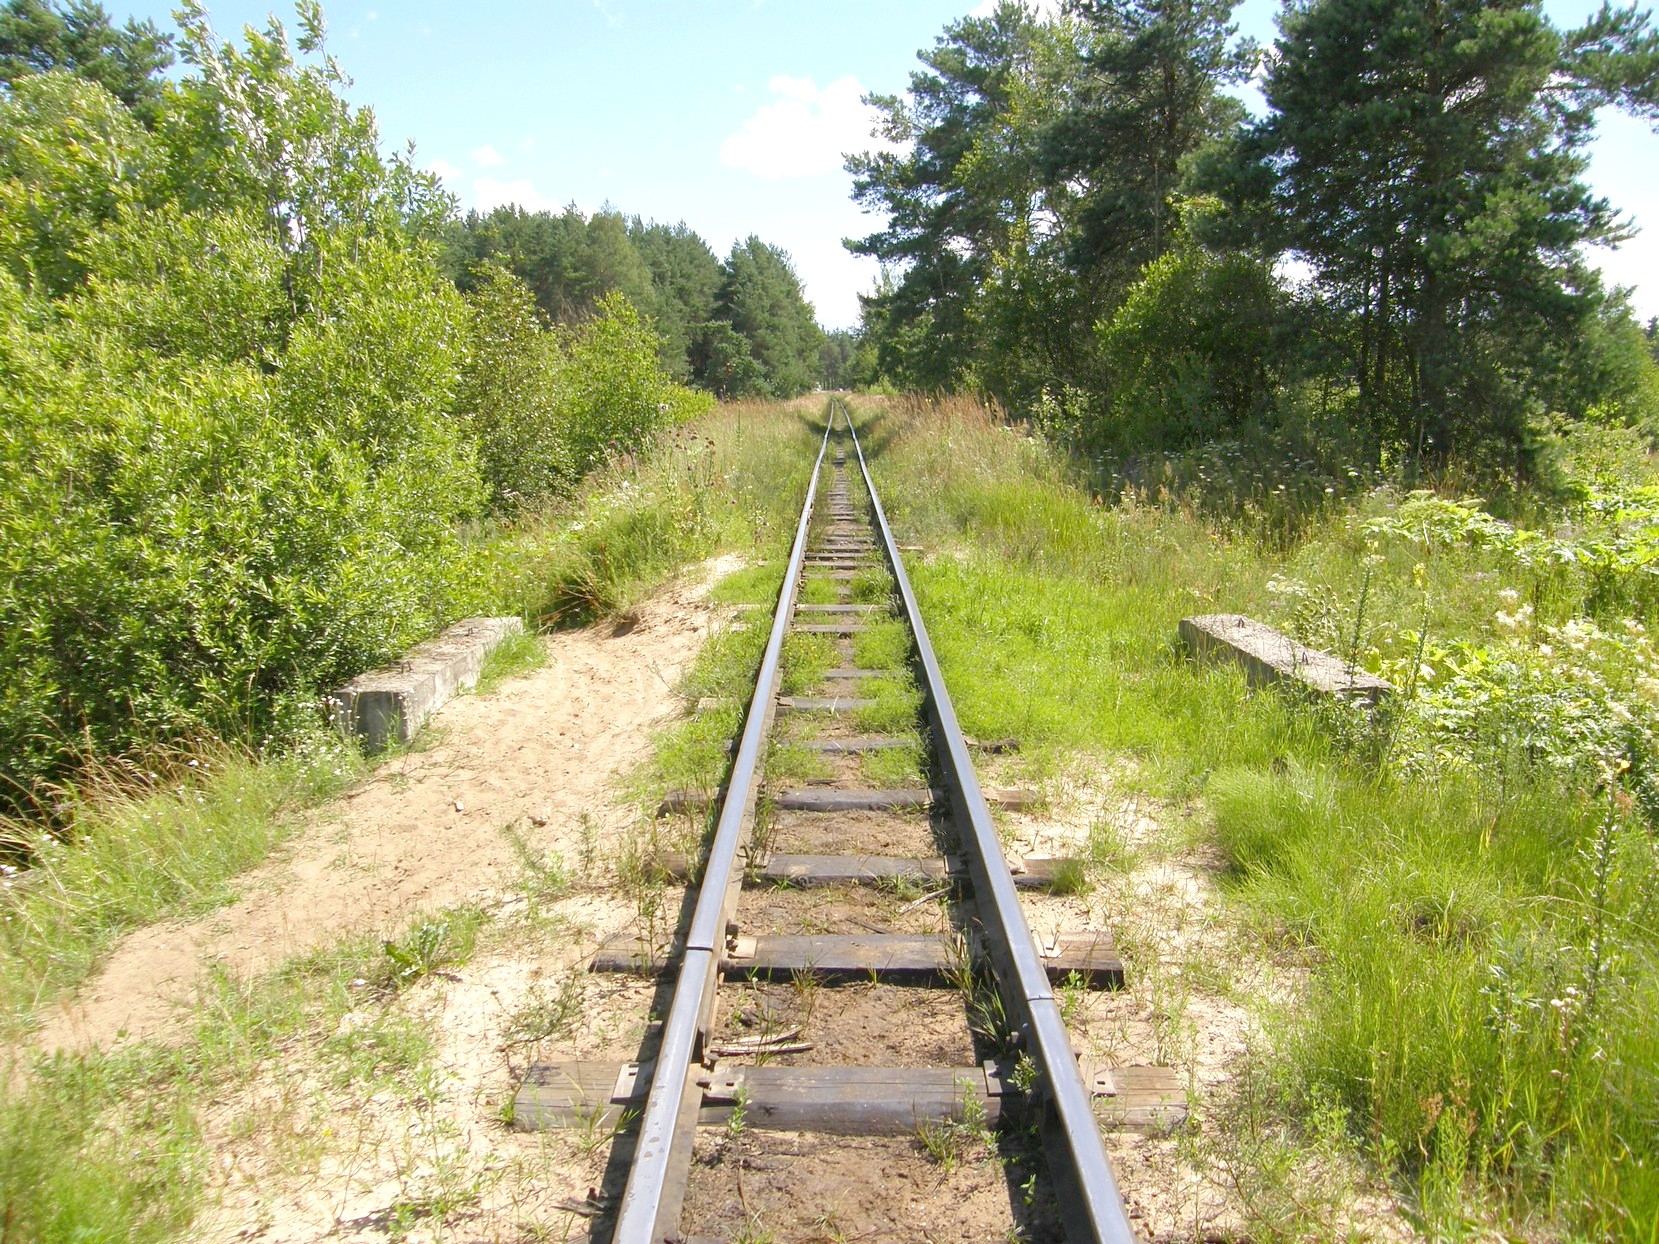 Узкоколейная железная дорога  Тверского комбината строительных материалов №2 — фотографии, сделанные в 2012 году (часть 1)